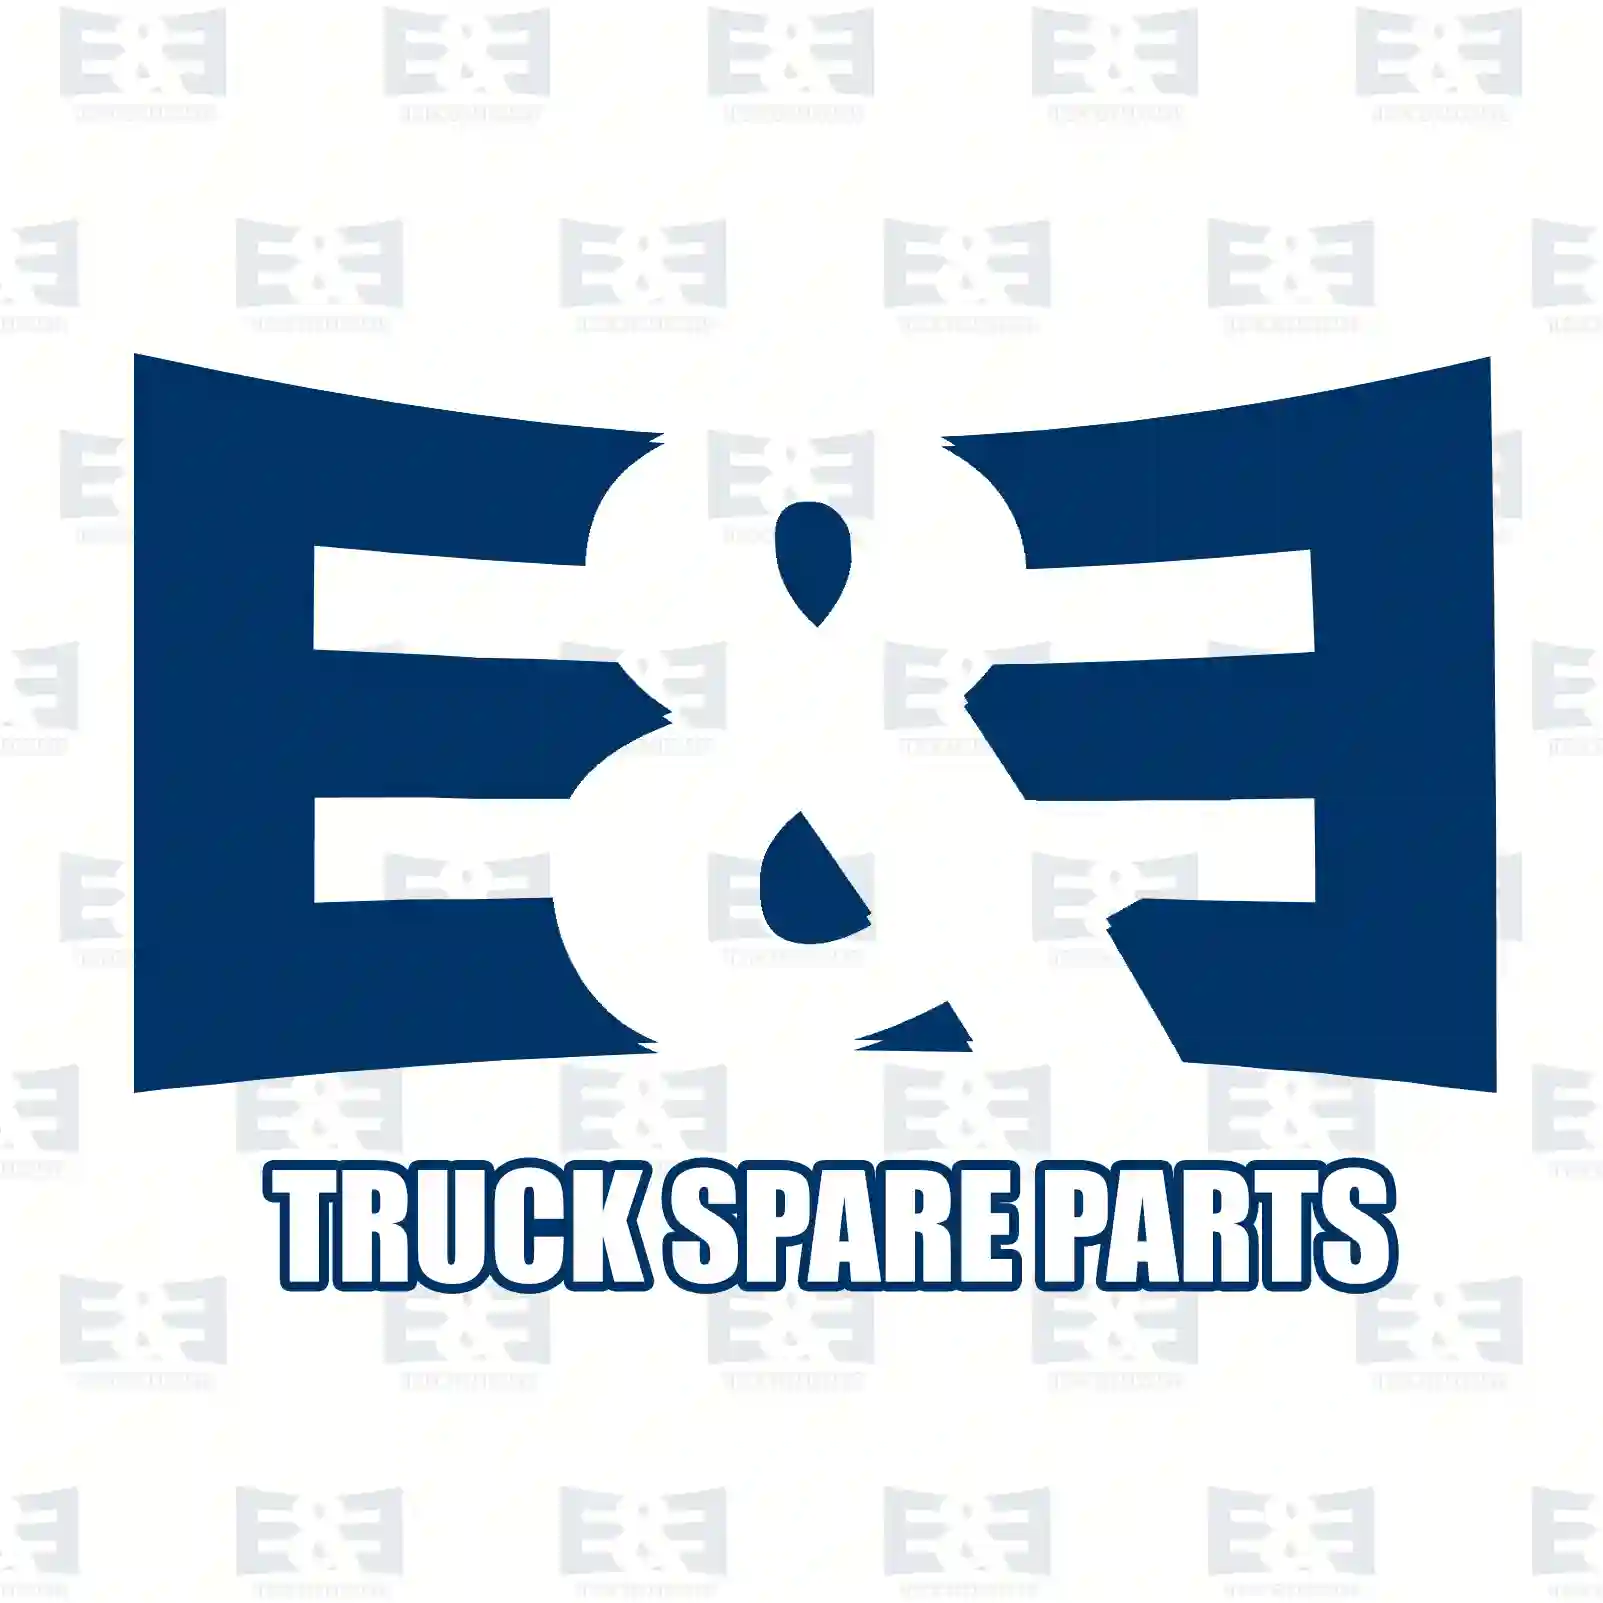 Screw plug, 2E2286464, 2109970132, 81903100178, 81903100234, 1249970132, 2109970132 ||  2E2286464 E&E Truck Spare Parts | Truck Spare Parts, Auotomotive Spare Parts Screw plug, 2E2286464, 2109970132, 81903100178, 81903100234, 1249970132, 2109970132 ||  2E2286464 E&E Truck Spare Parts | Truck Spare Parts, Auotomotive Spare Parts